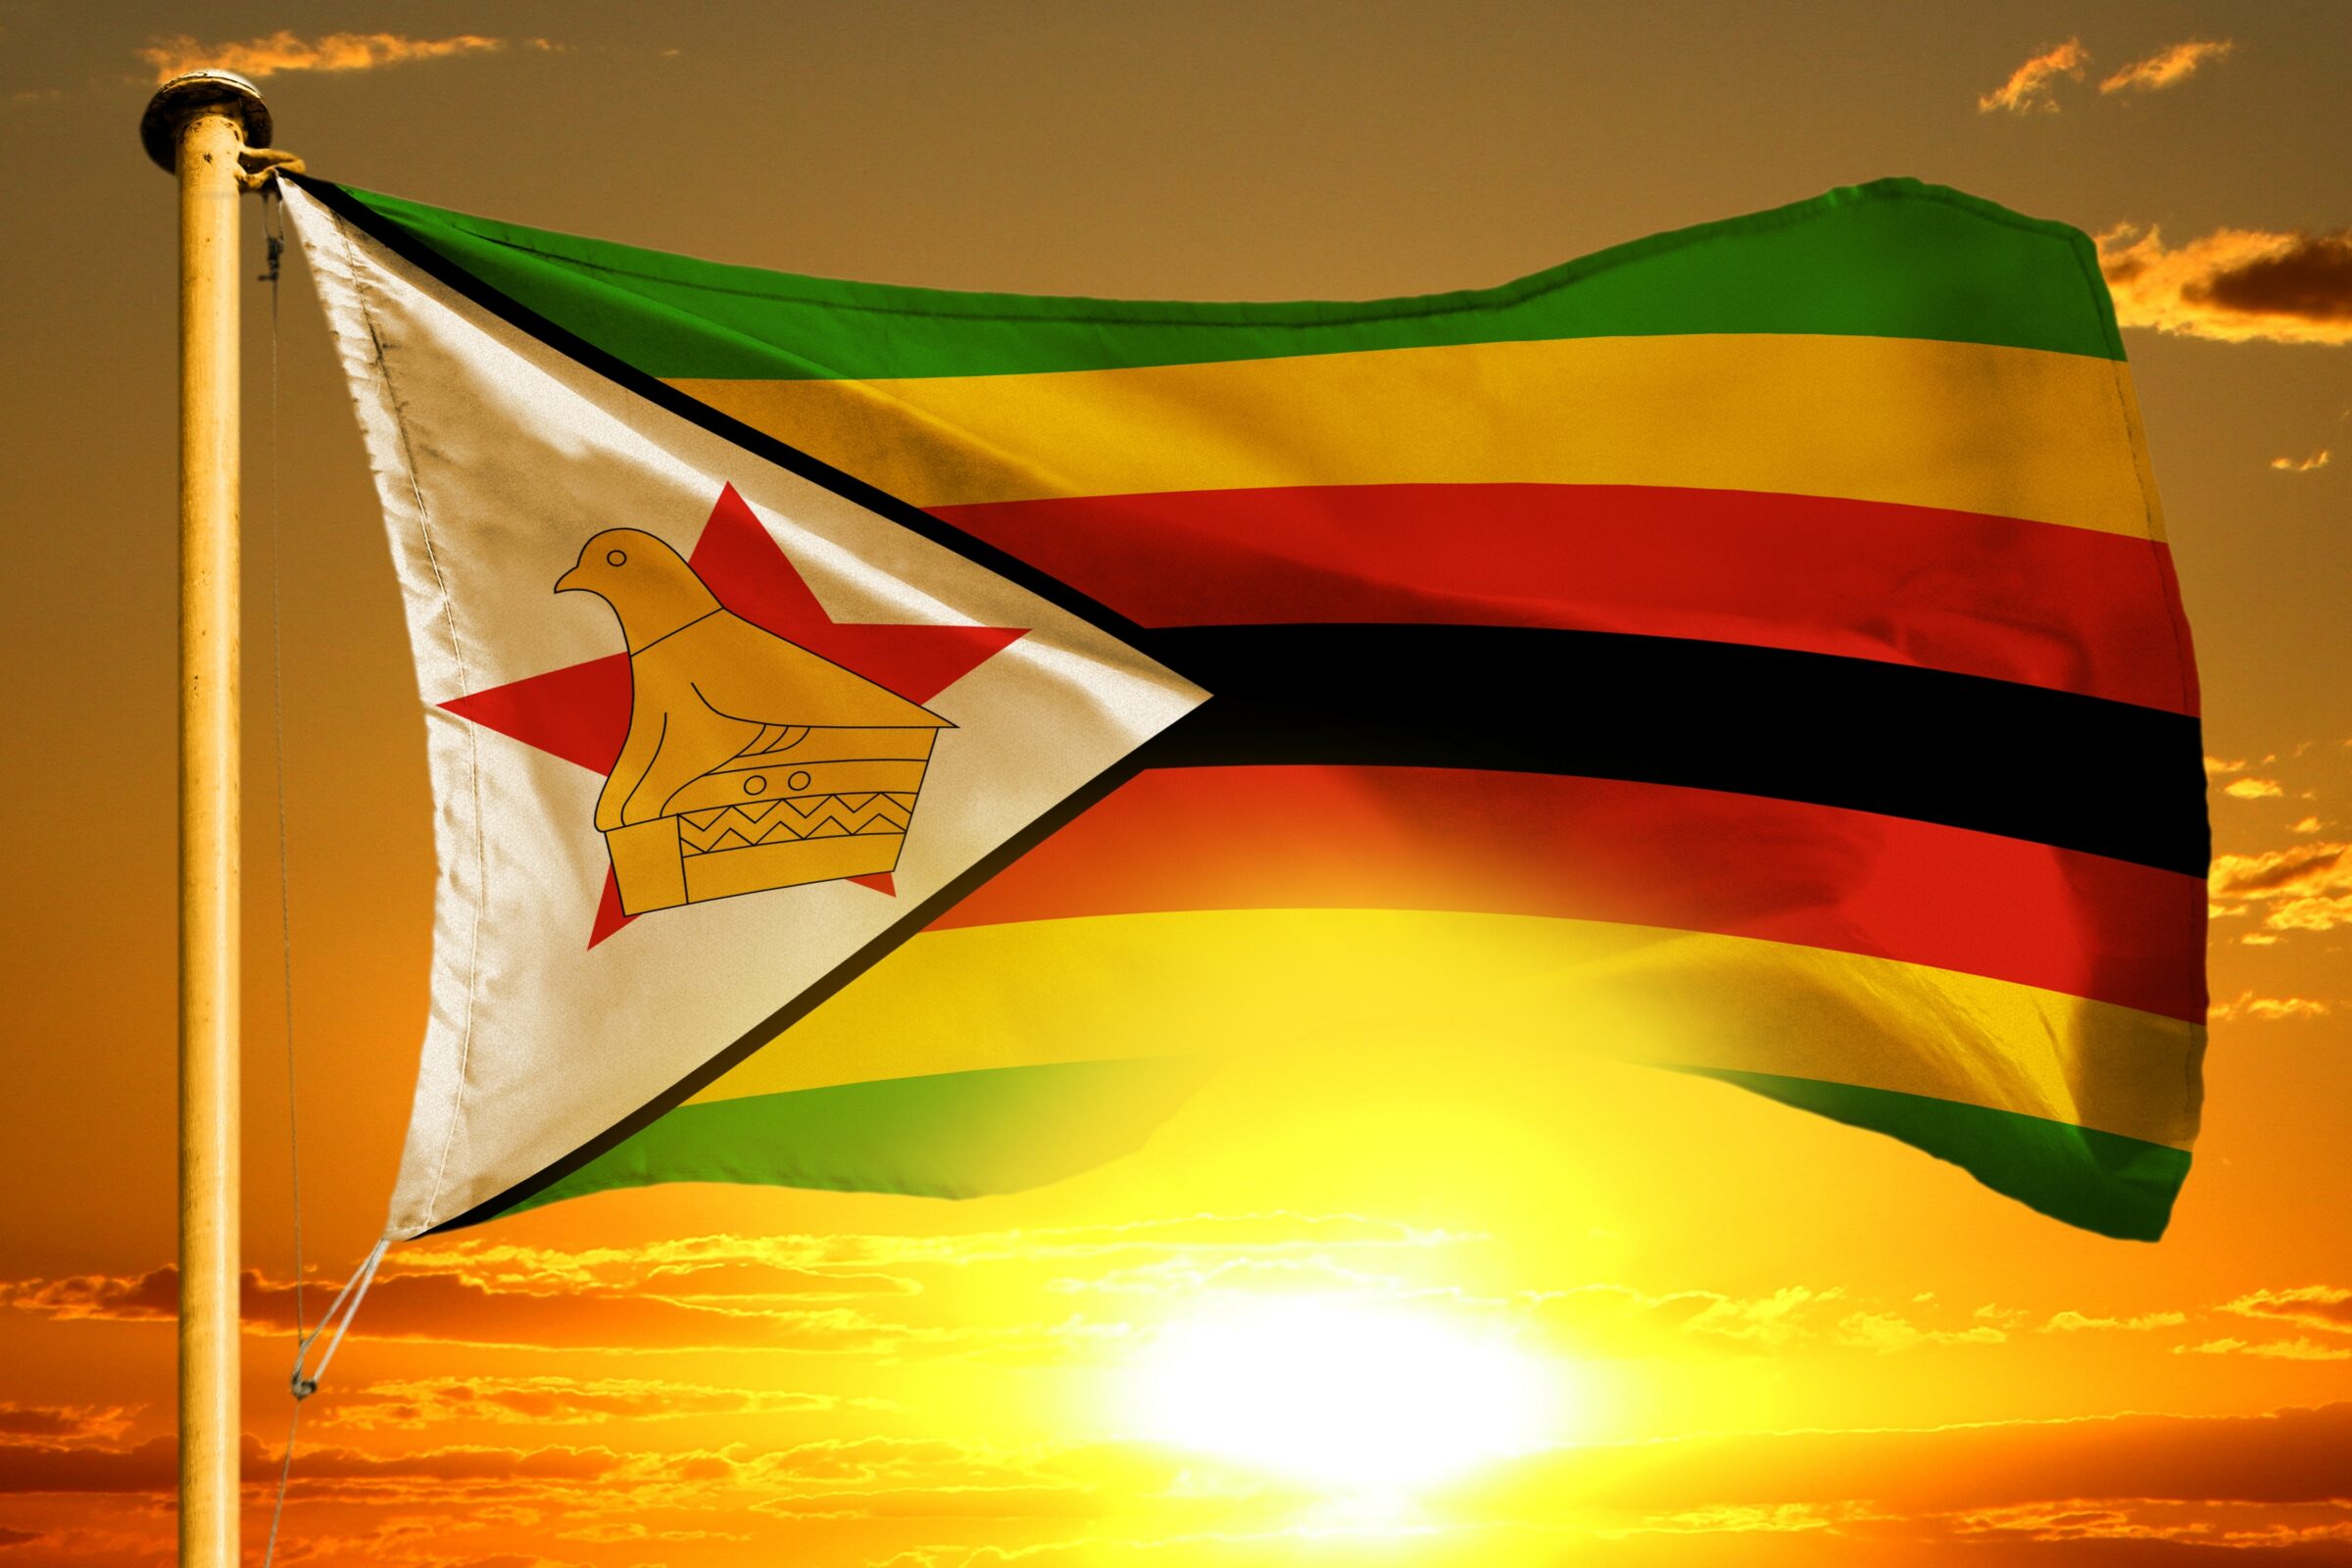 Zimbabwe flag against orange sunset